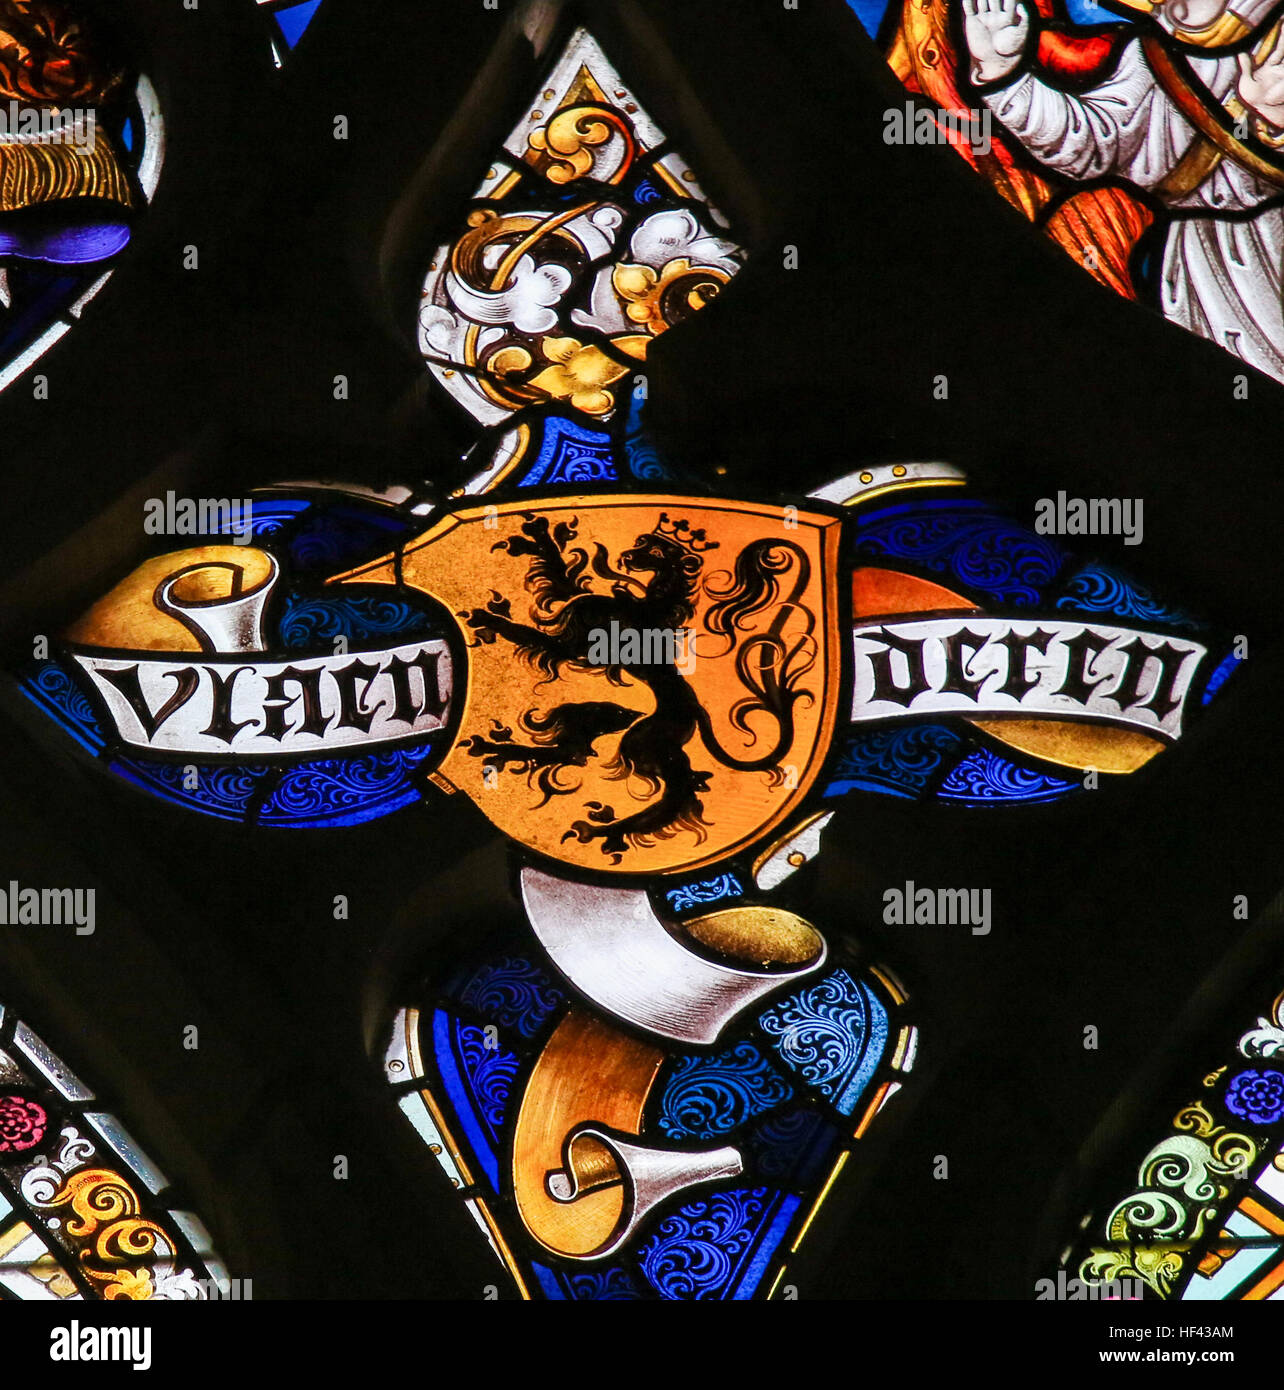 Vitrail représentant le Lion Flamand et le texte Vlaanderen (Flandre) dans la Cathédrale de Saint-bavon à Gand, Flandre orientale, Belgique. Banque D'Images